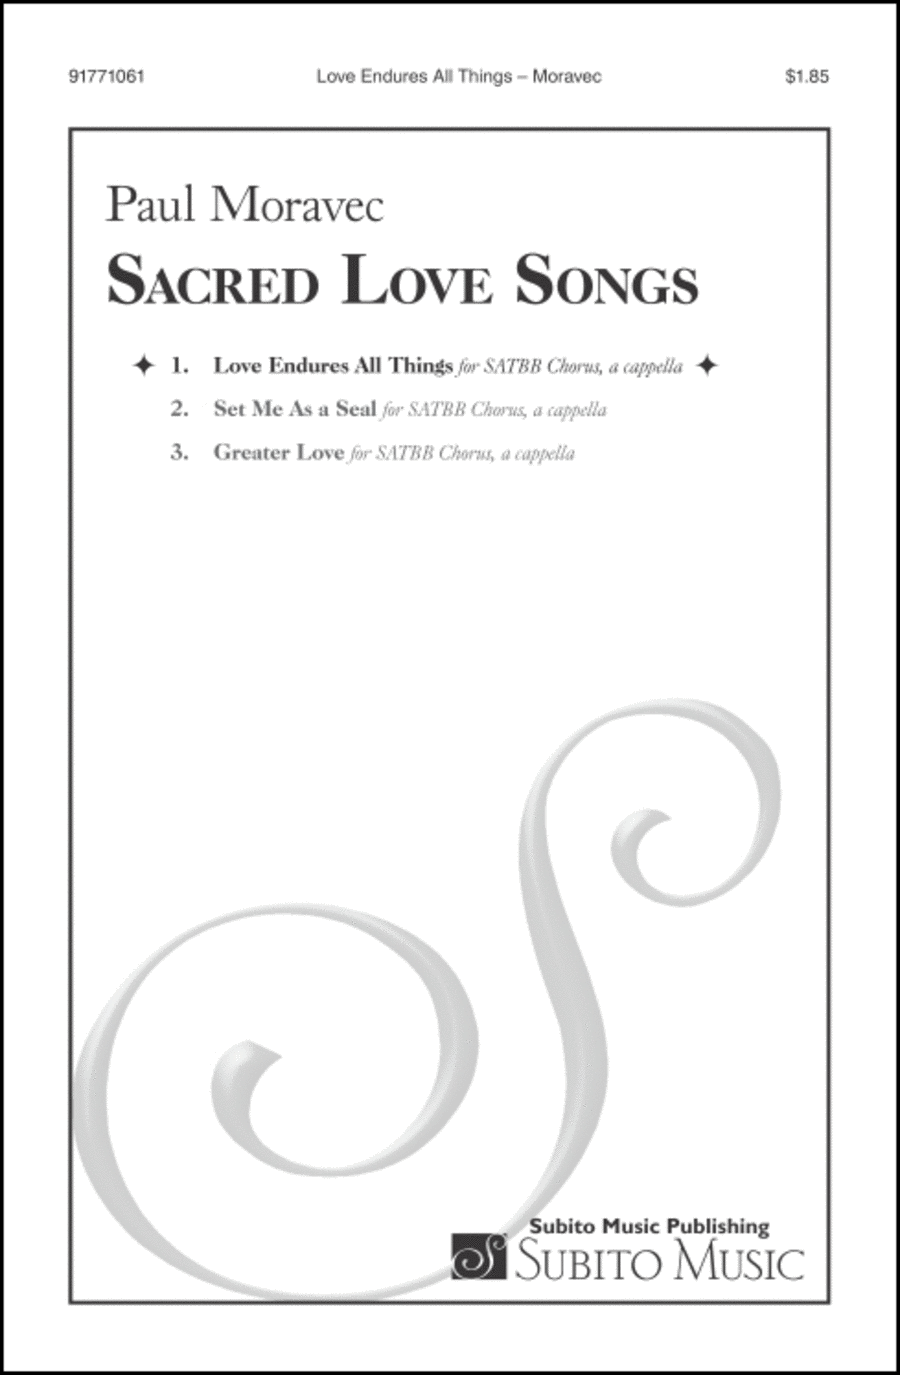 Sacred Love Songs: 1. Love Endures All Things